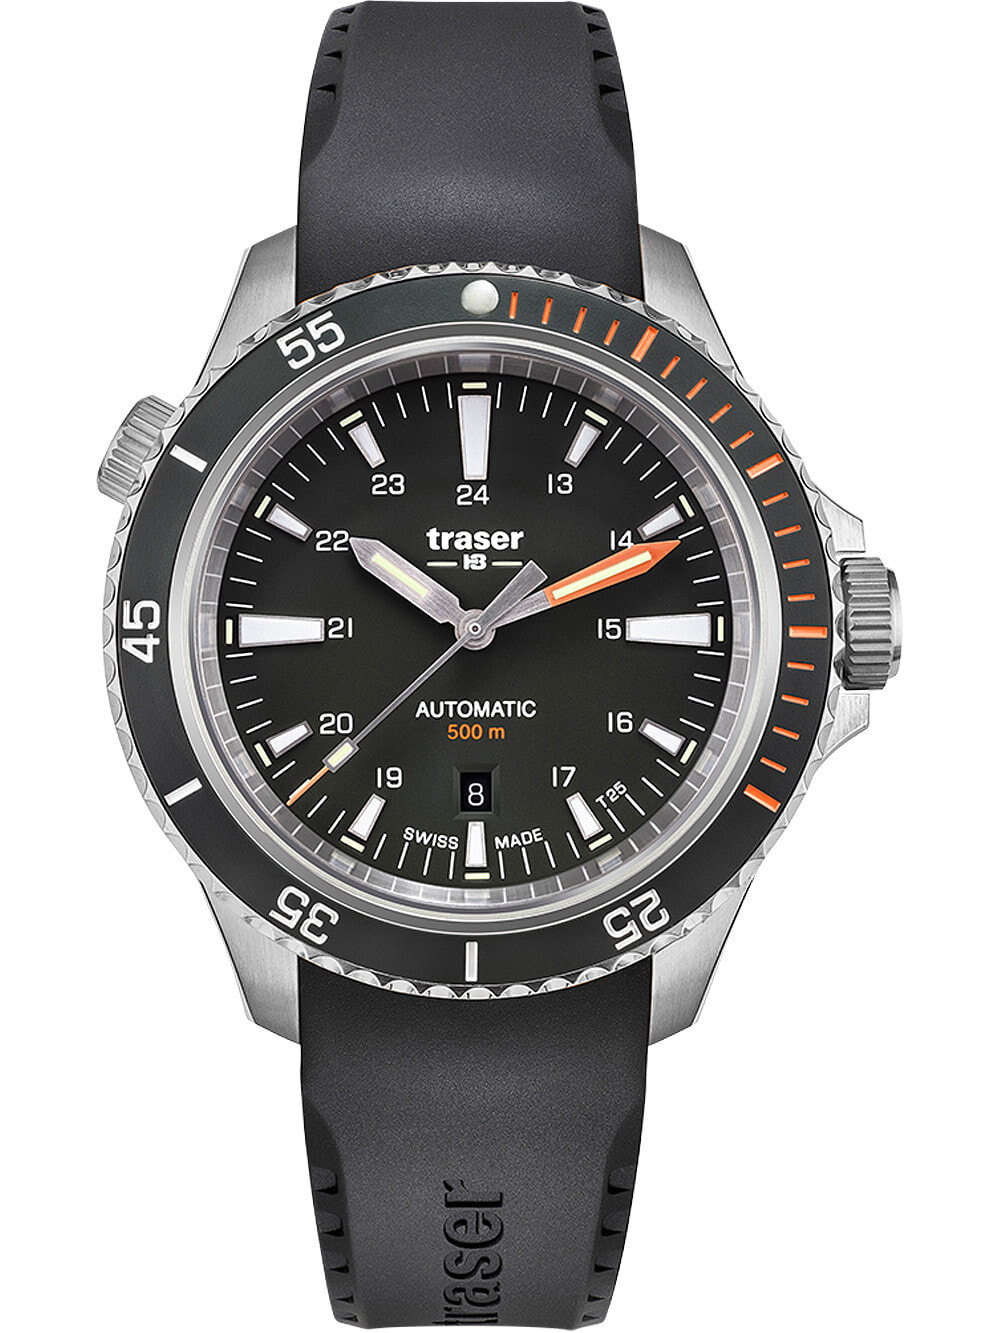 Мужские наручные часы с черным силиконовым ремешком Traser H3 110322 P67 Diver Automatik Black 46mm 50ATM